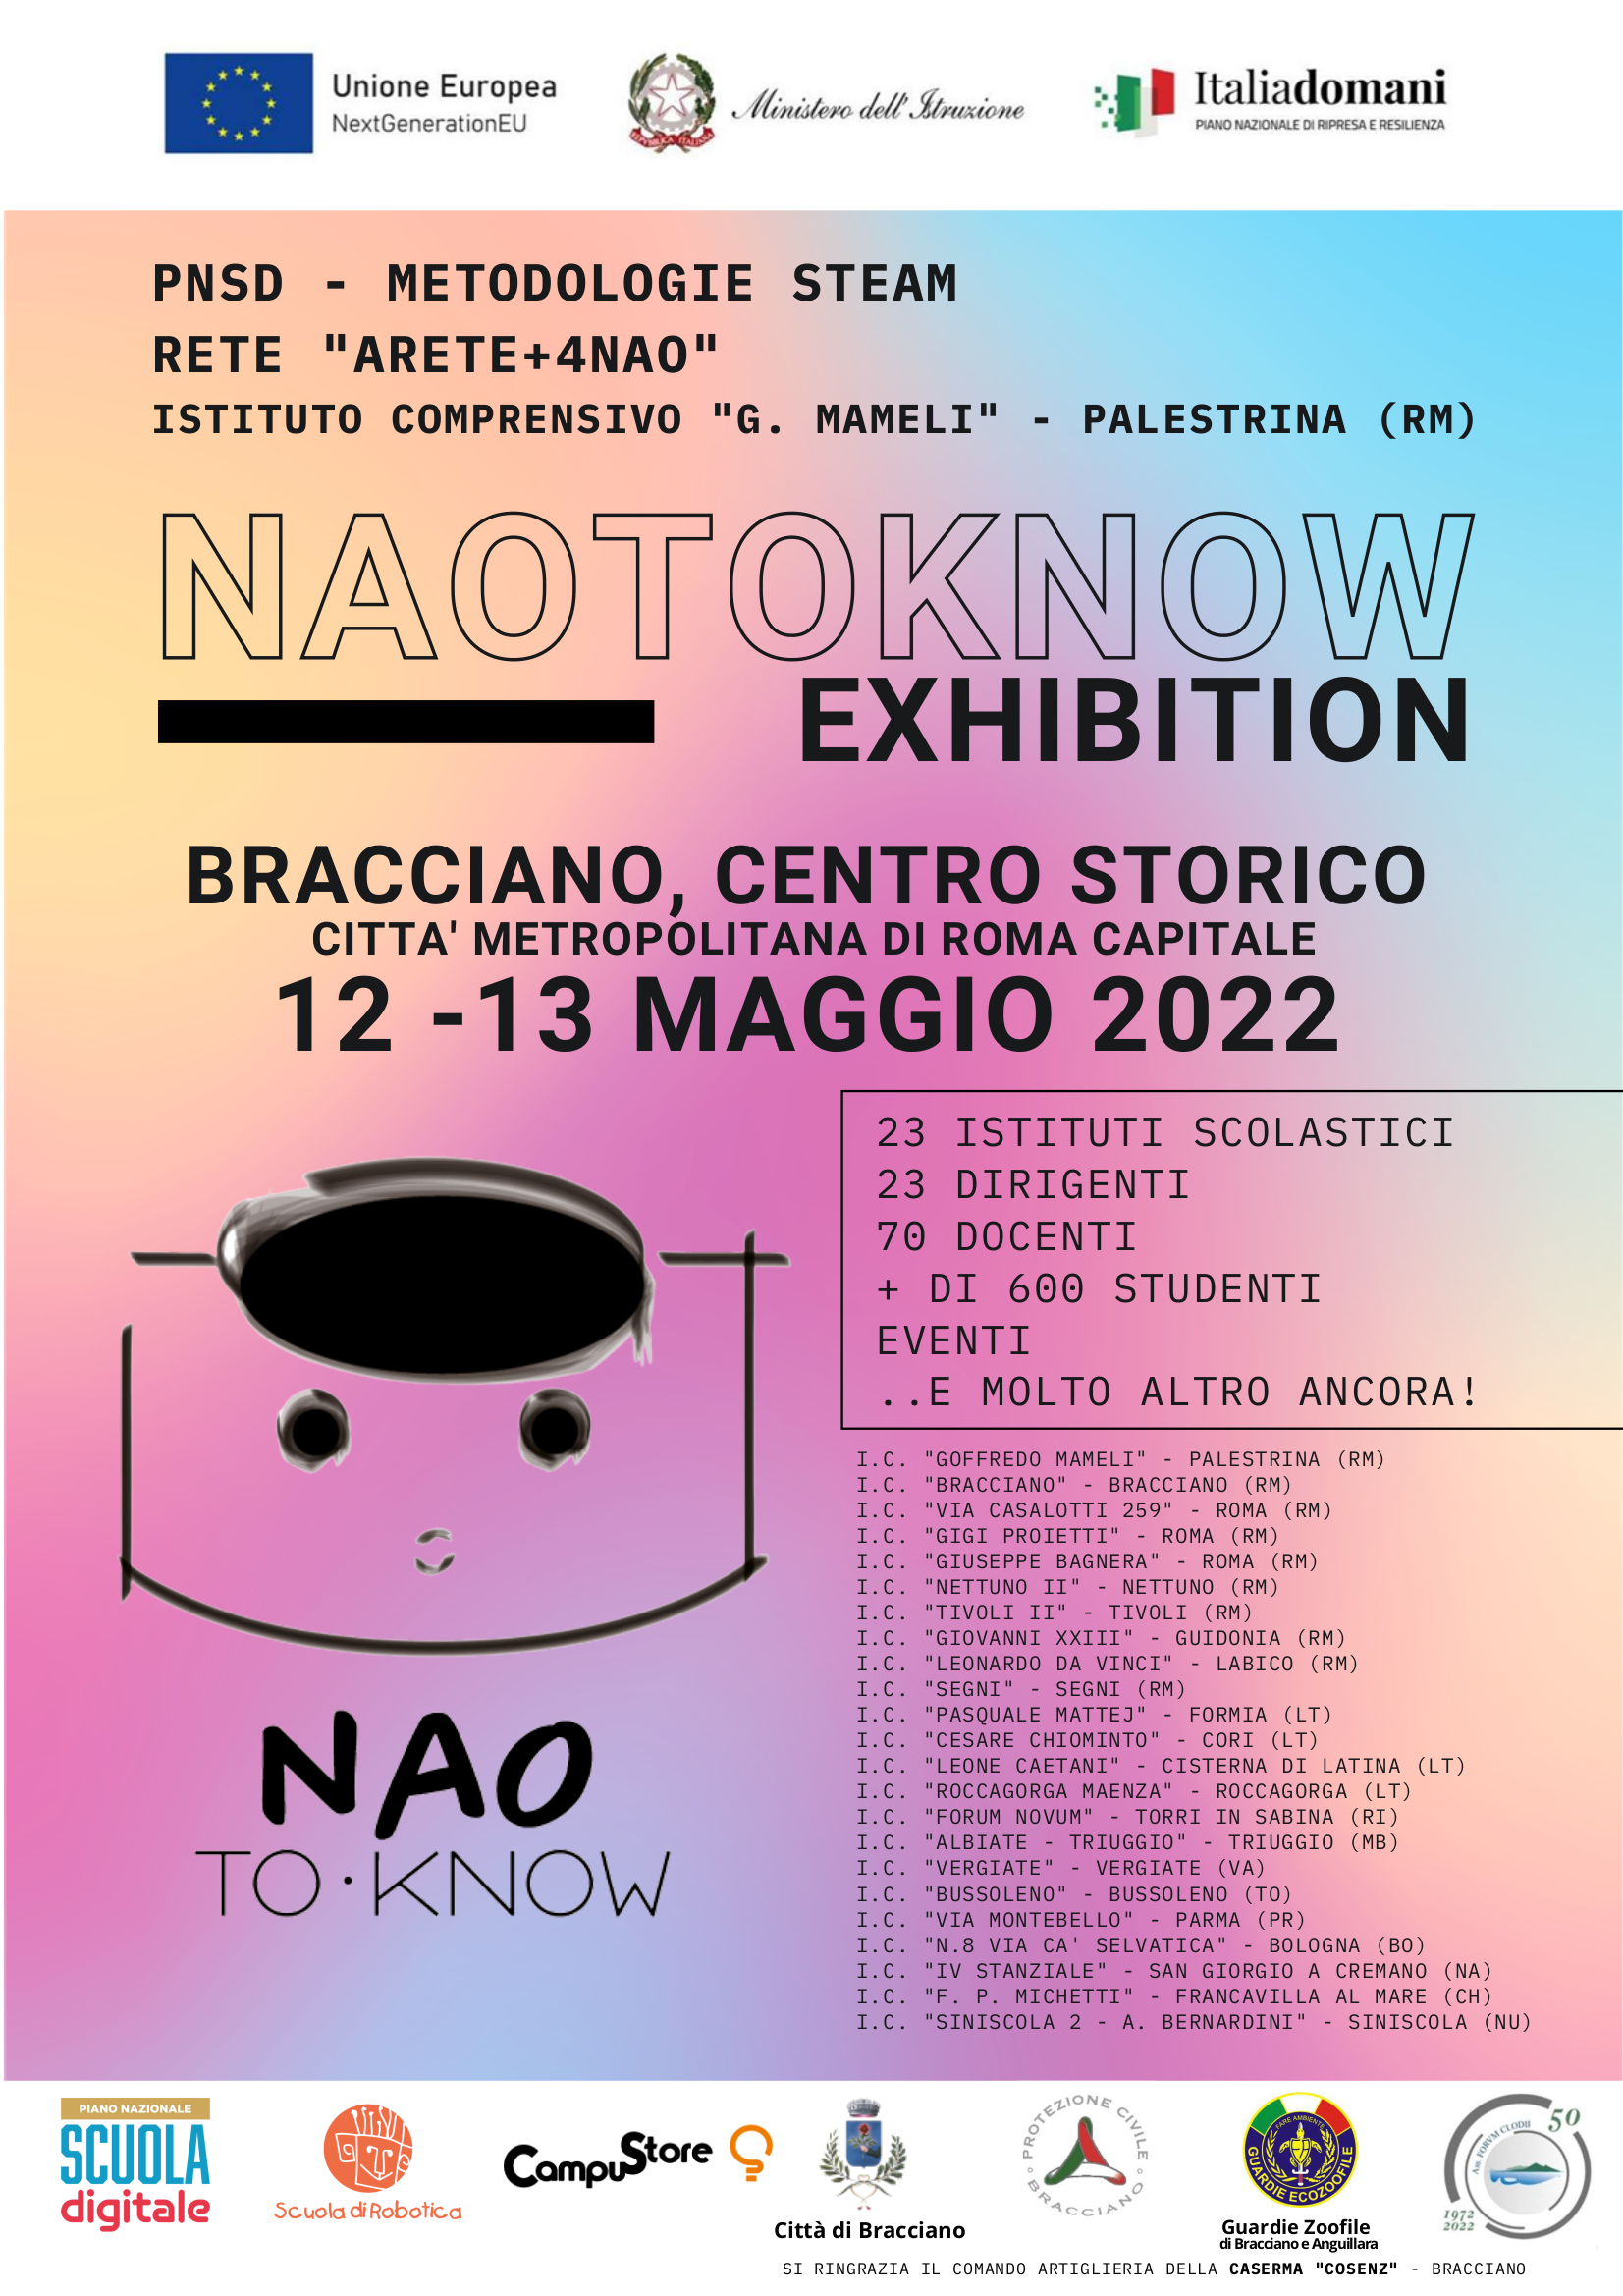 Progetto Arete+4Nao  NaoToKnow Exhibition 12-13 maggio 2022  BRACCIANO